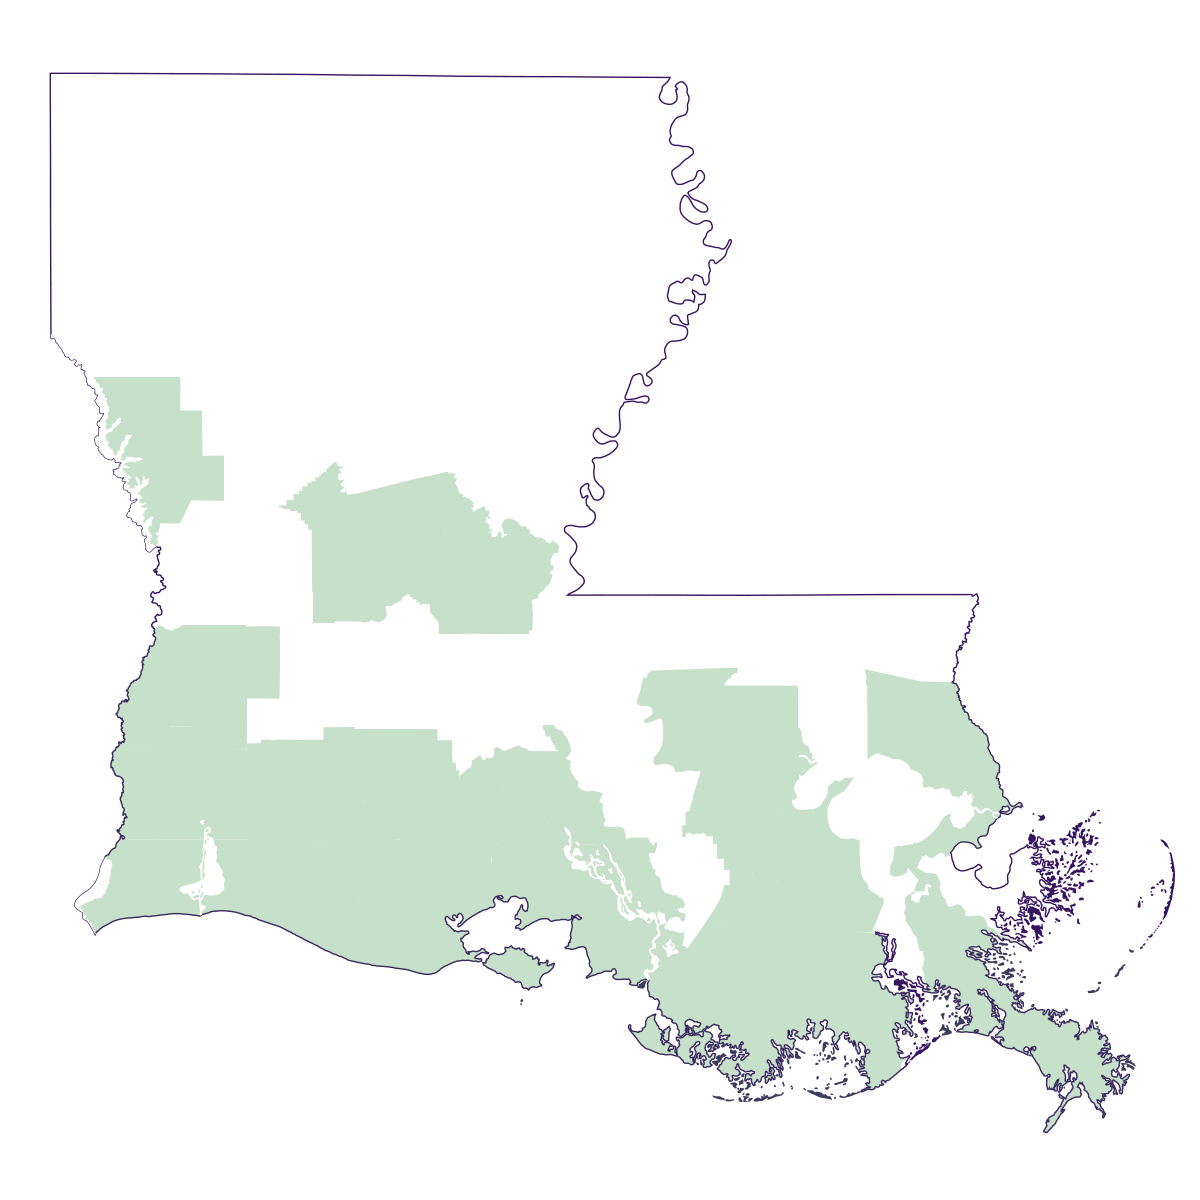 Map of satsuma production in Louisiana